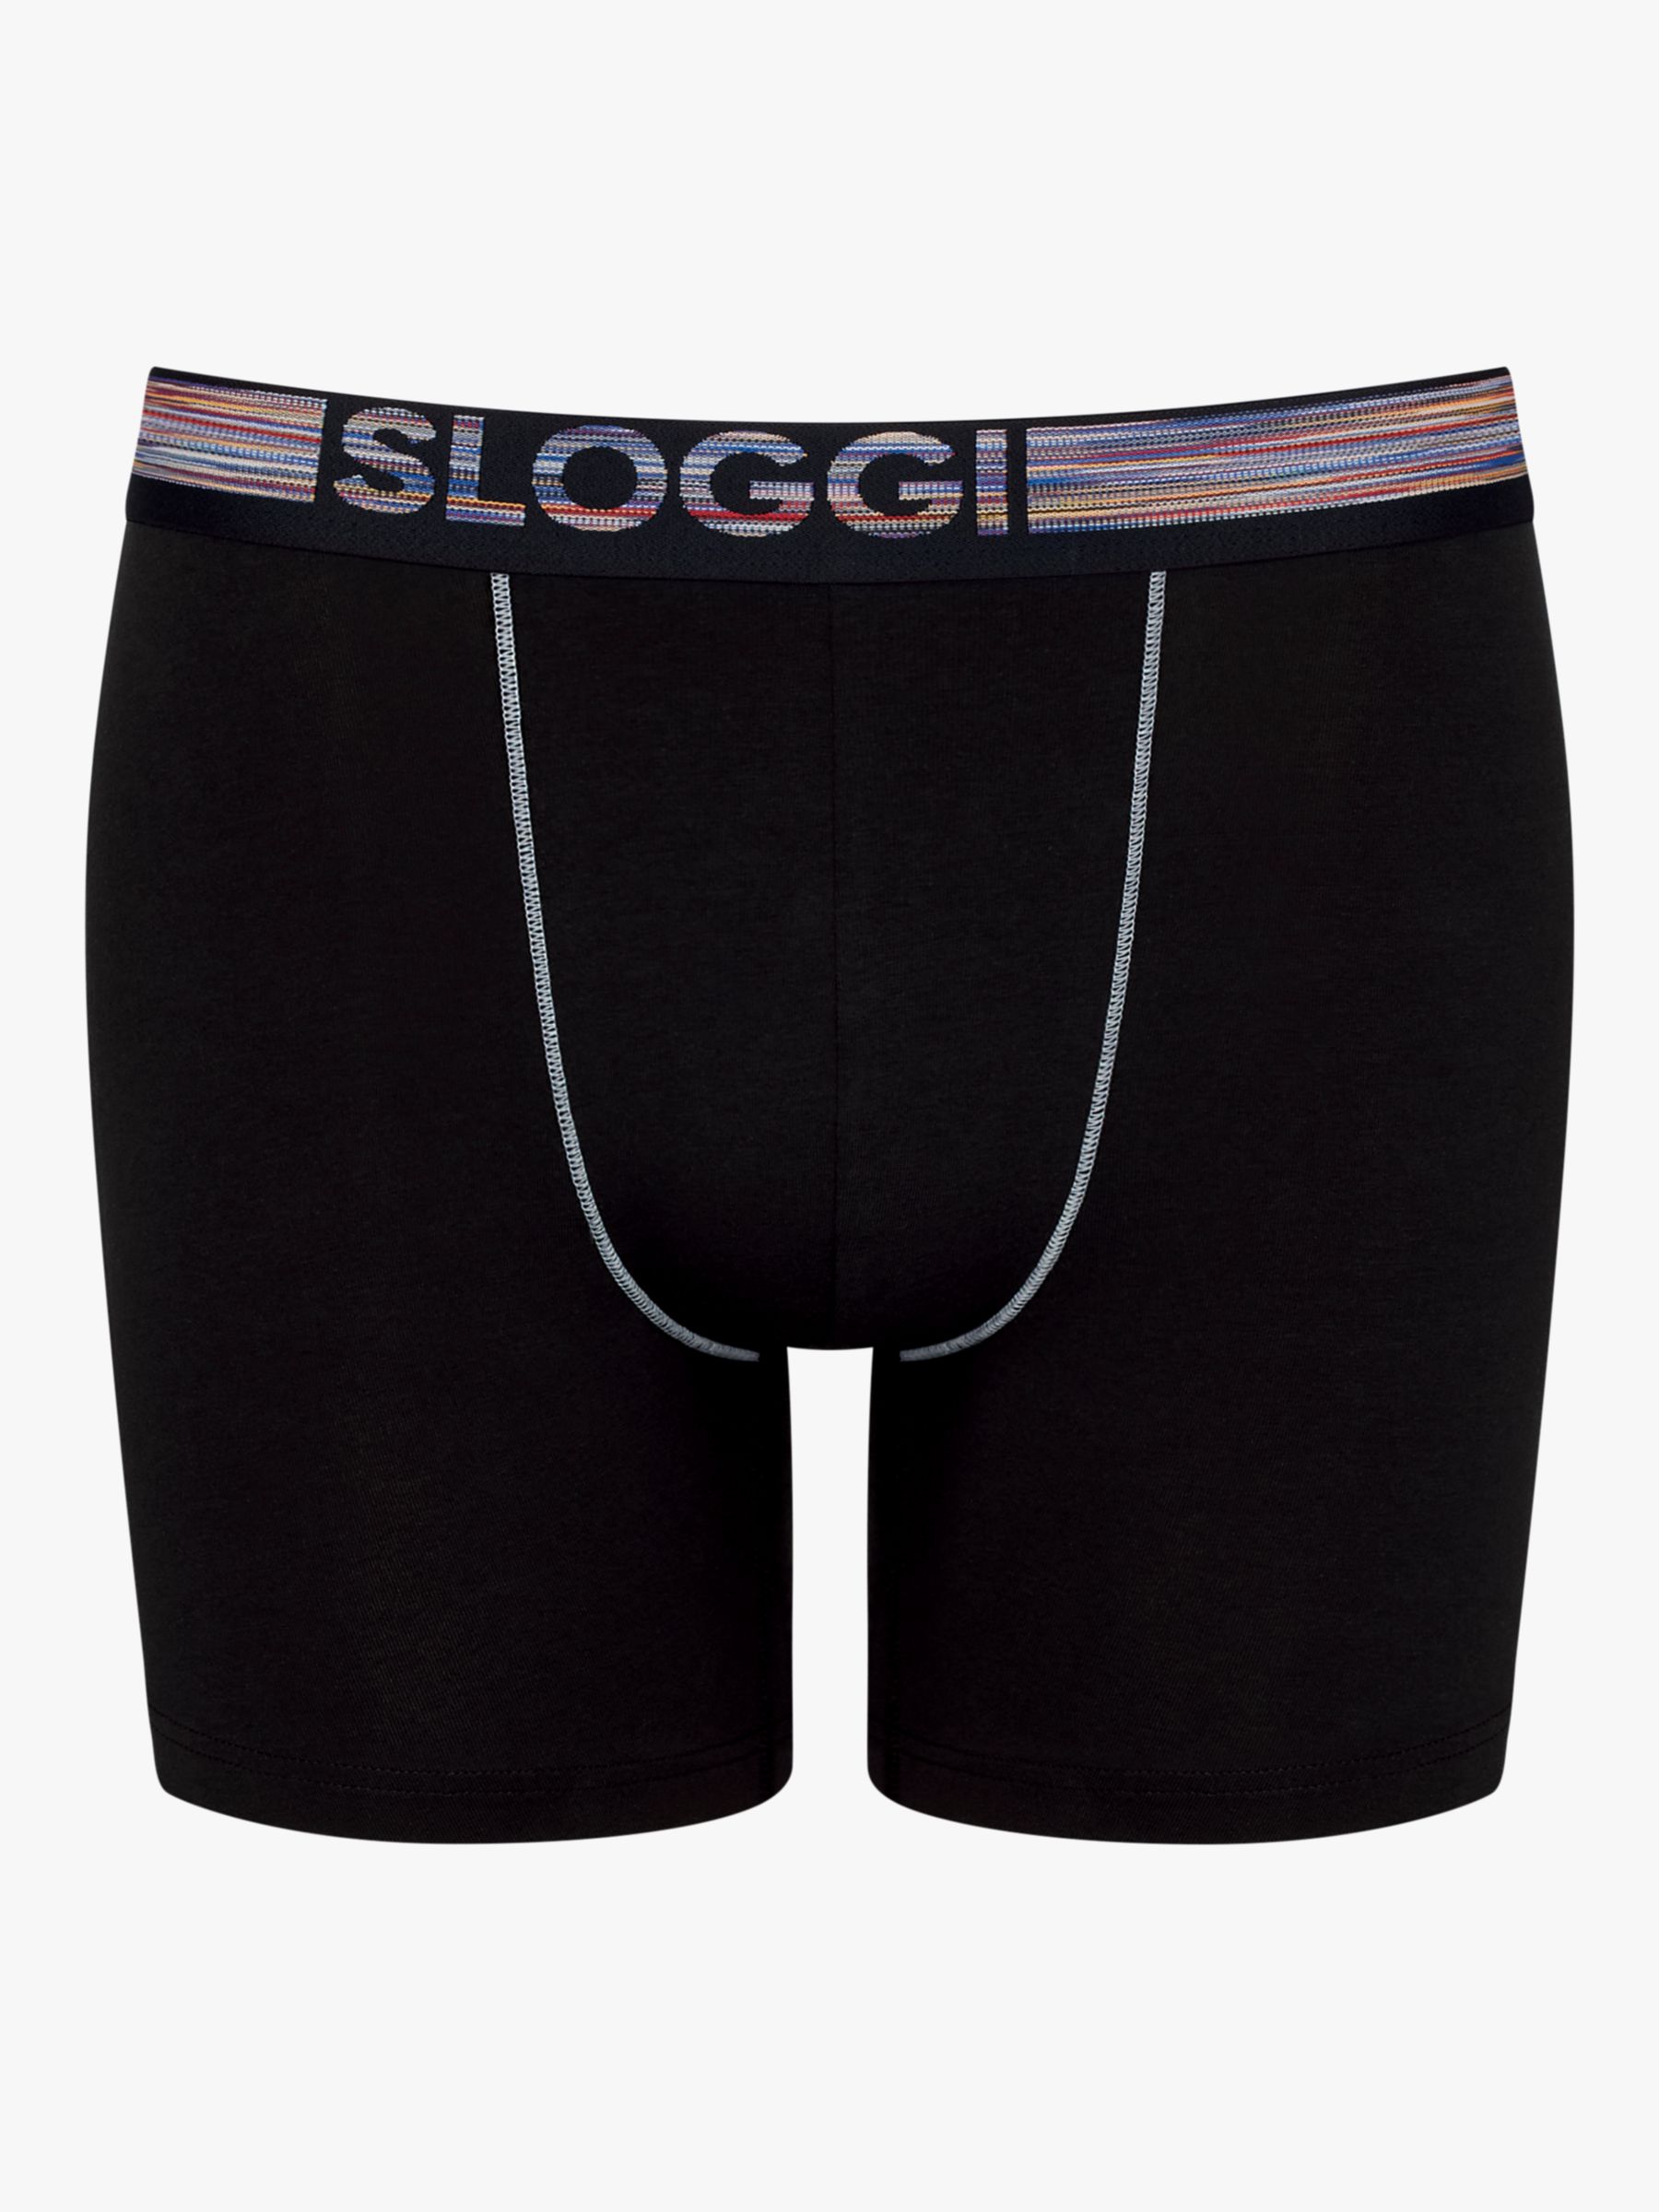 Sloggi Men's Sloggi Men Ever Soft Briefs 2P Mini, Warm Stone, S :  : Clothing, Shoes & Accessories